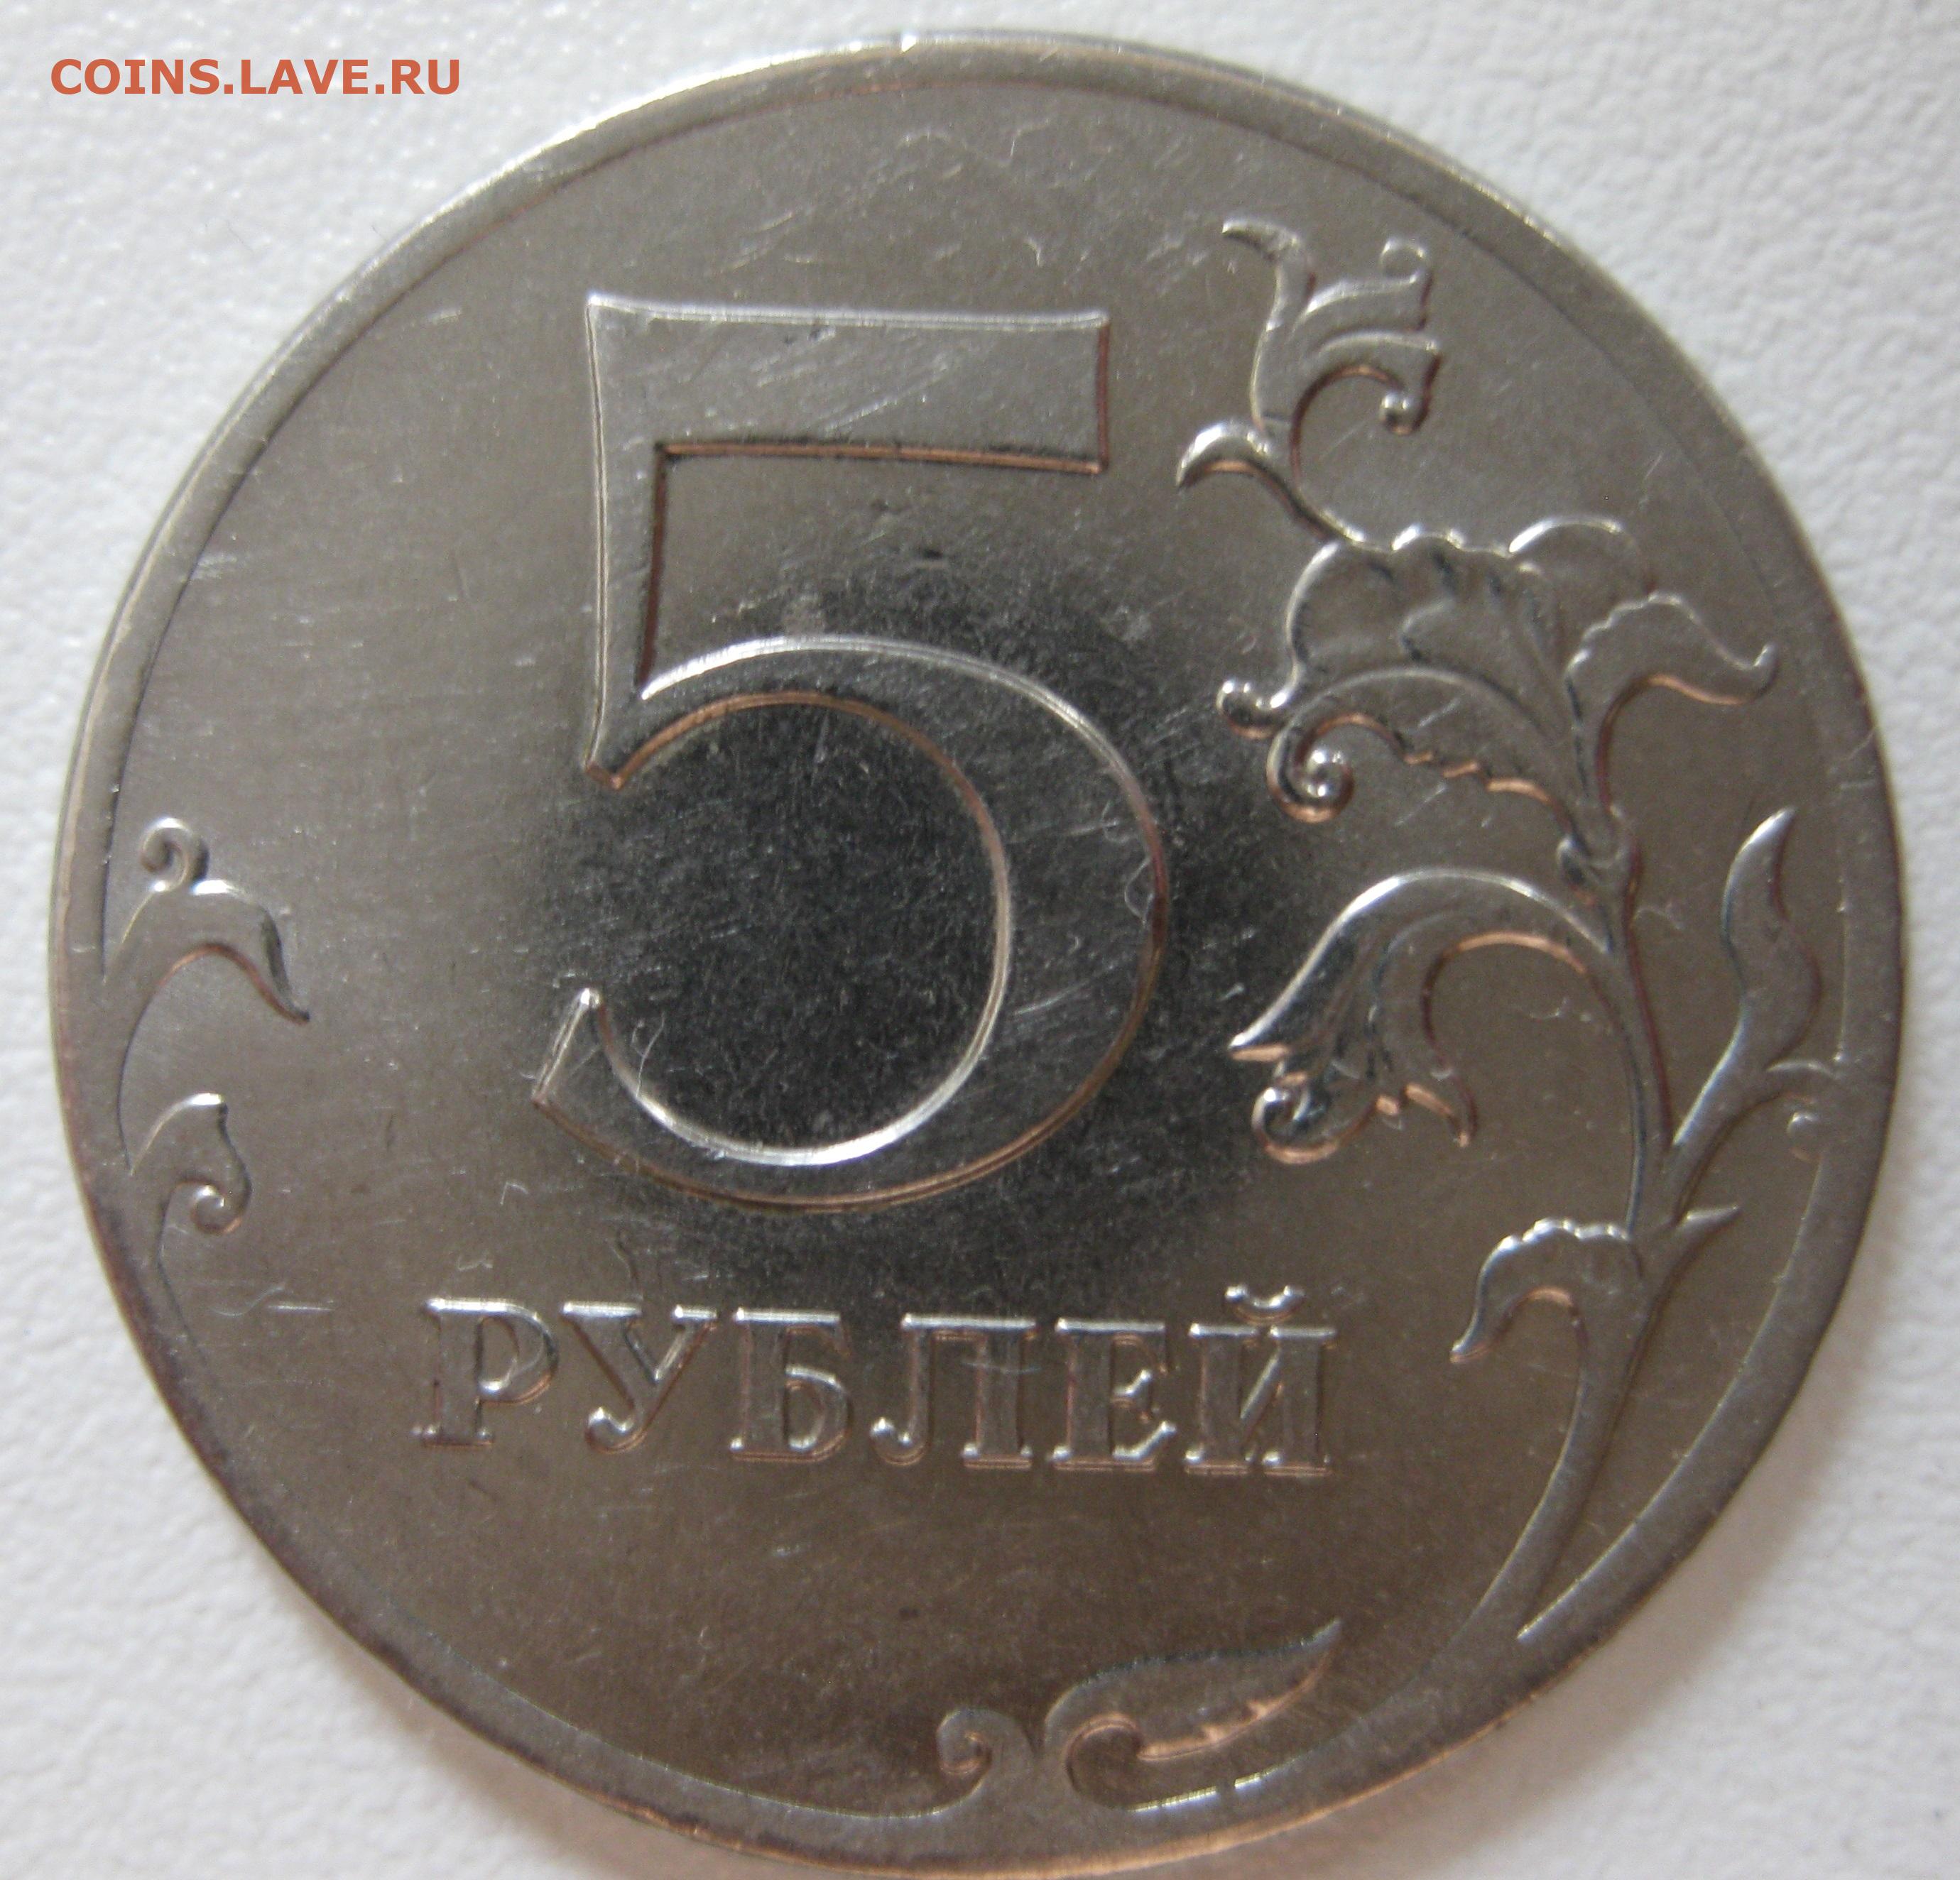 5 рублей 1997 купить. 5 Рублей 2017. Брак монета реверс-реверс. 5 Рублей брак чеканки. 1 Рубль 2020 брак раскол штемпеля.